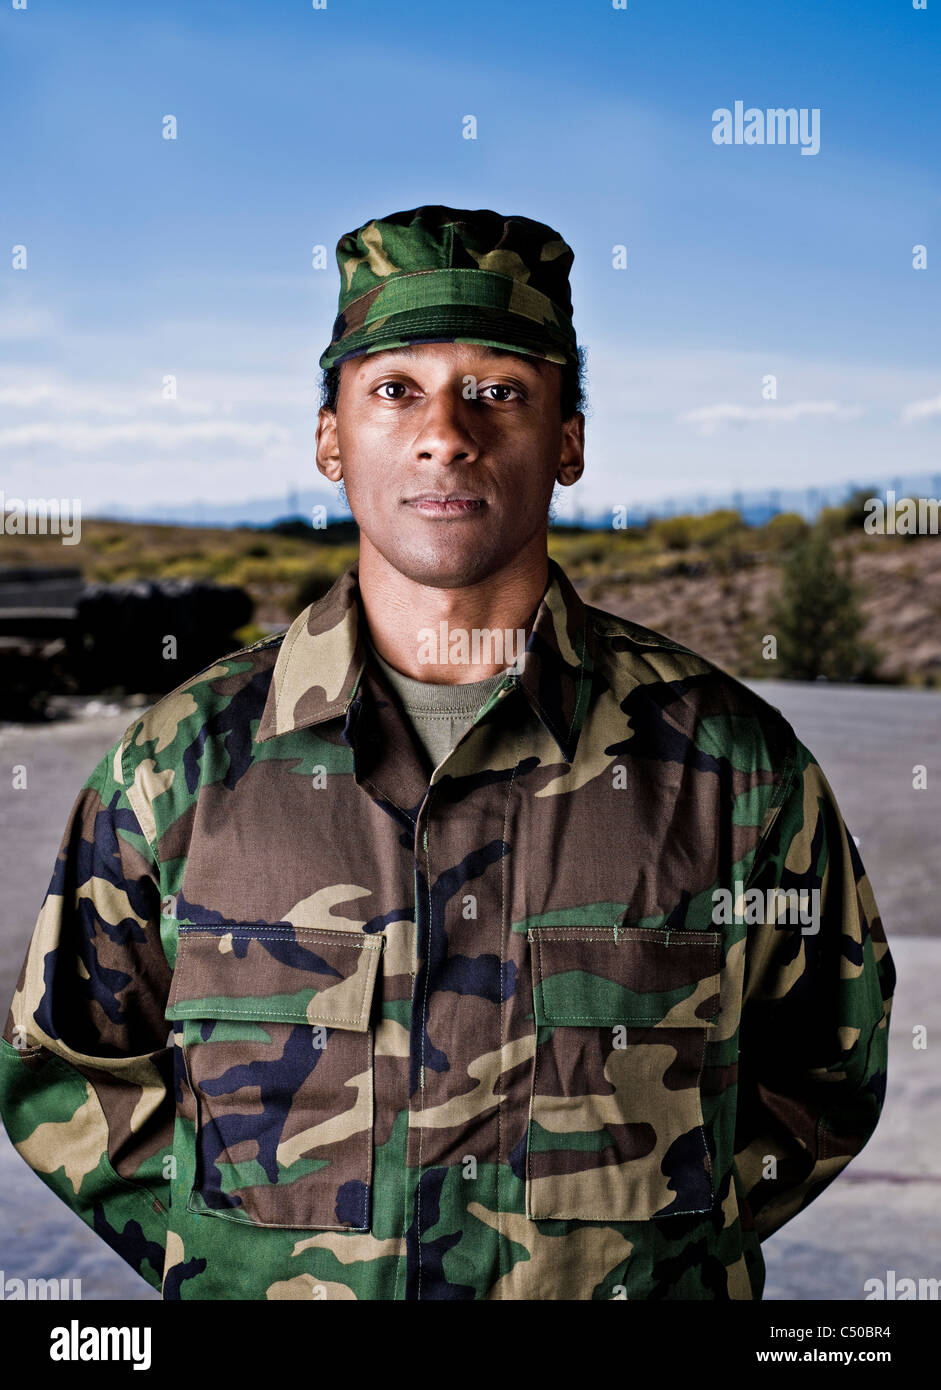 Soldat américain africain des uniformes de camouflage Banque D'Images